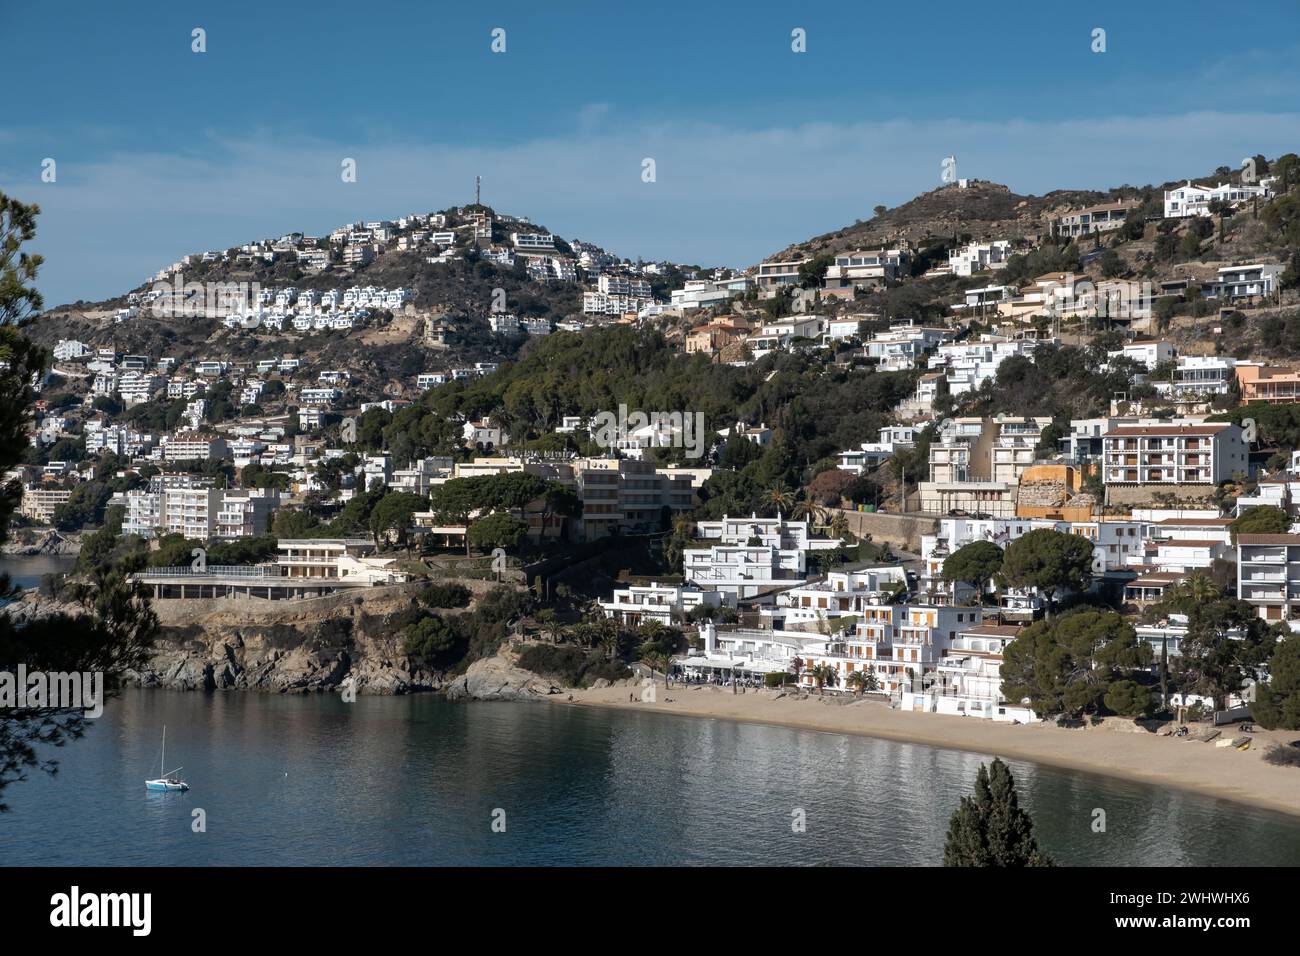 Imaginez vivre ici avec une vue fantastique sur la mer en Espagne Banque D'Images